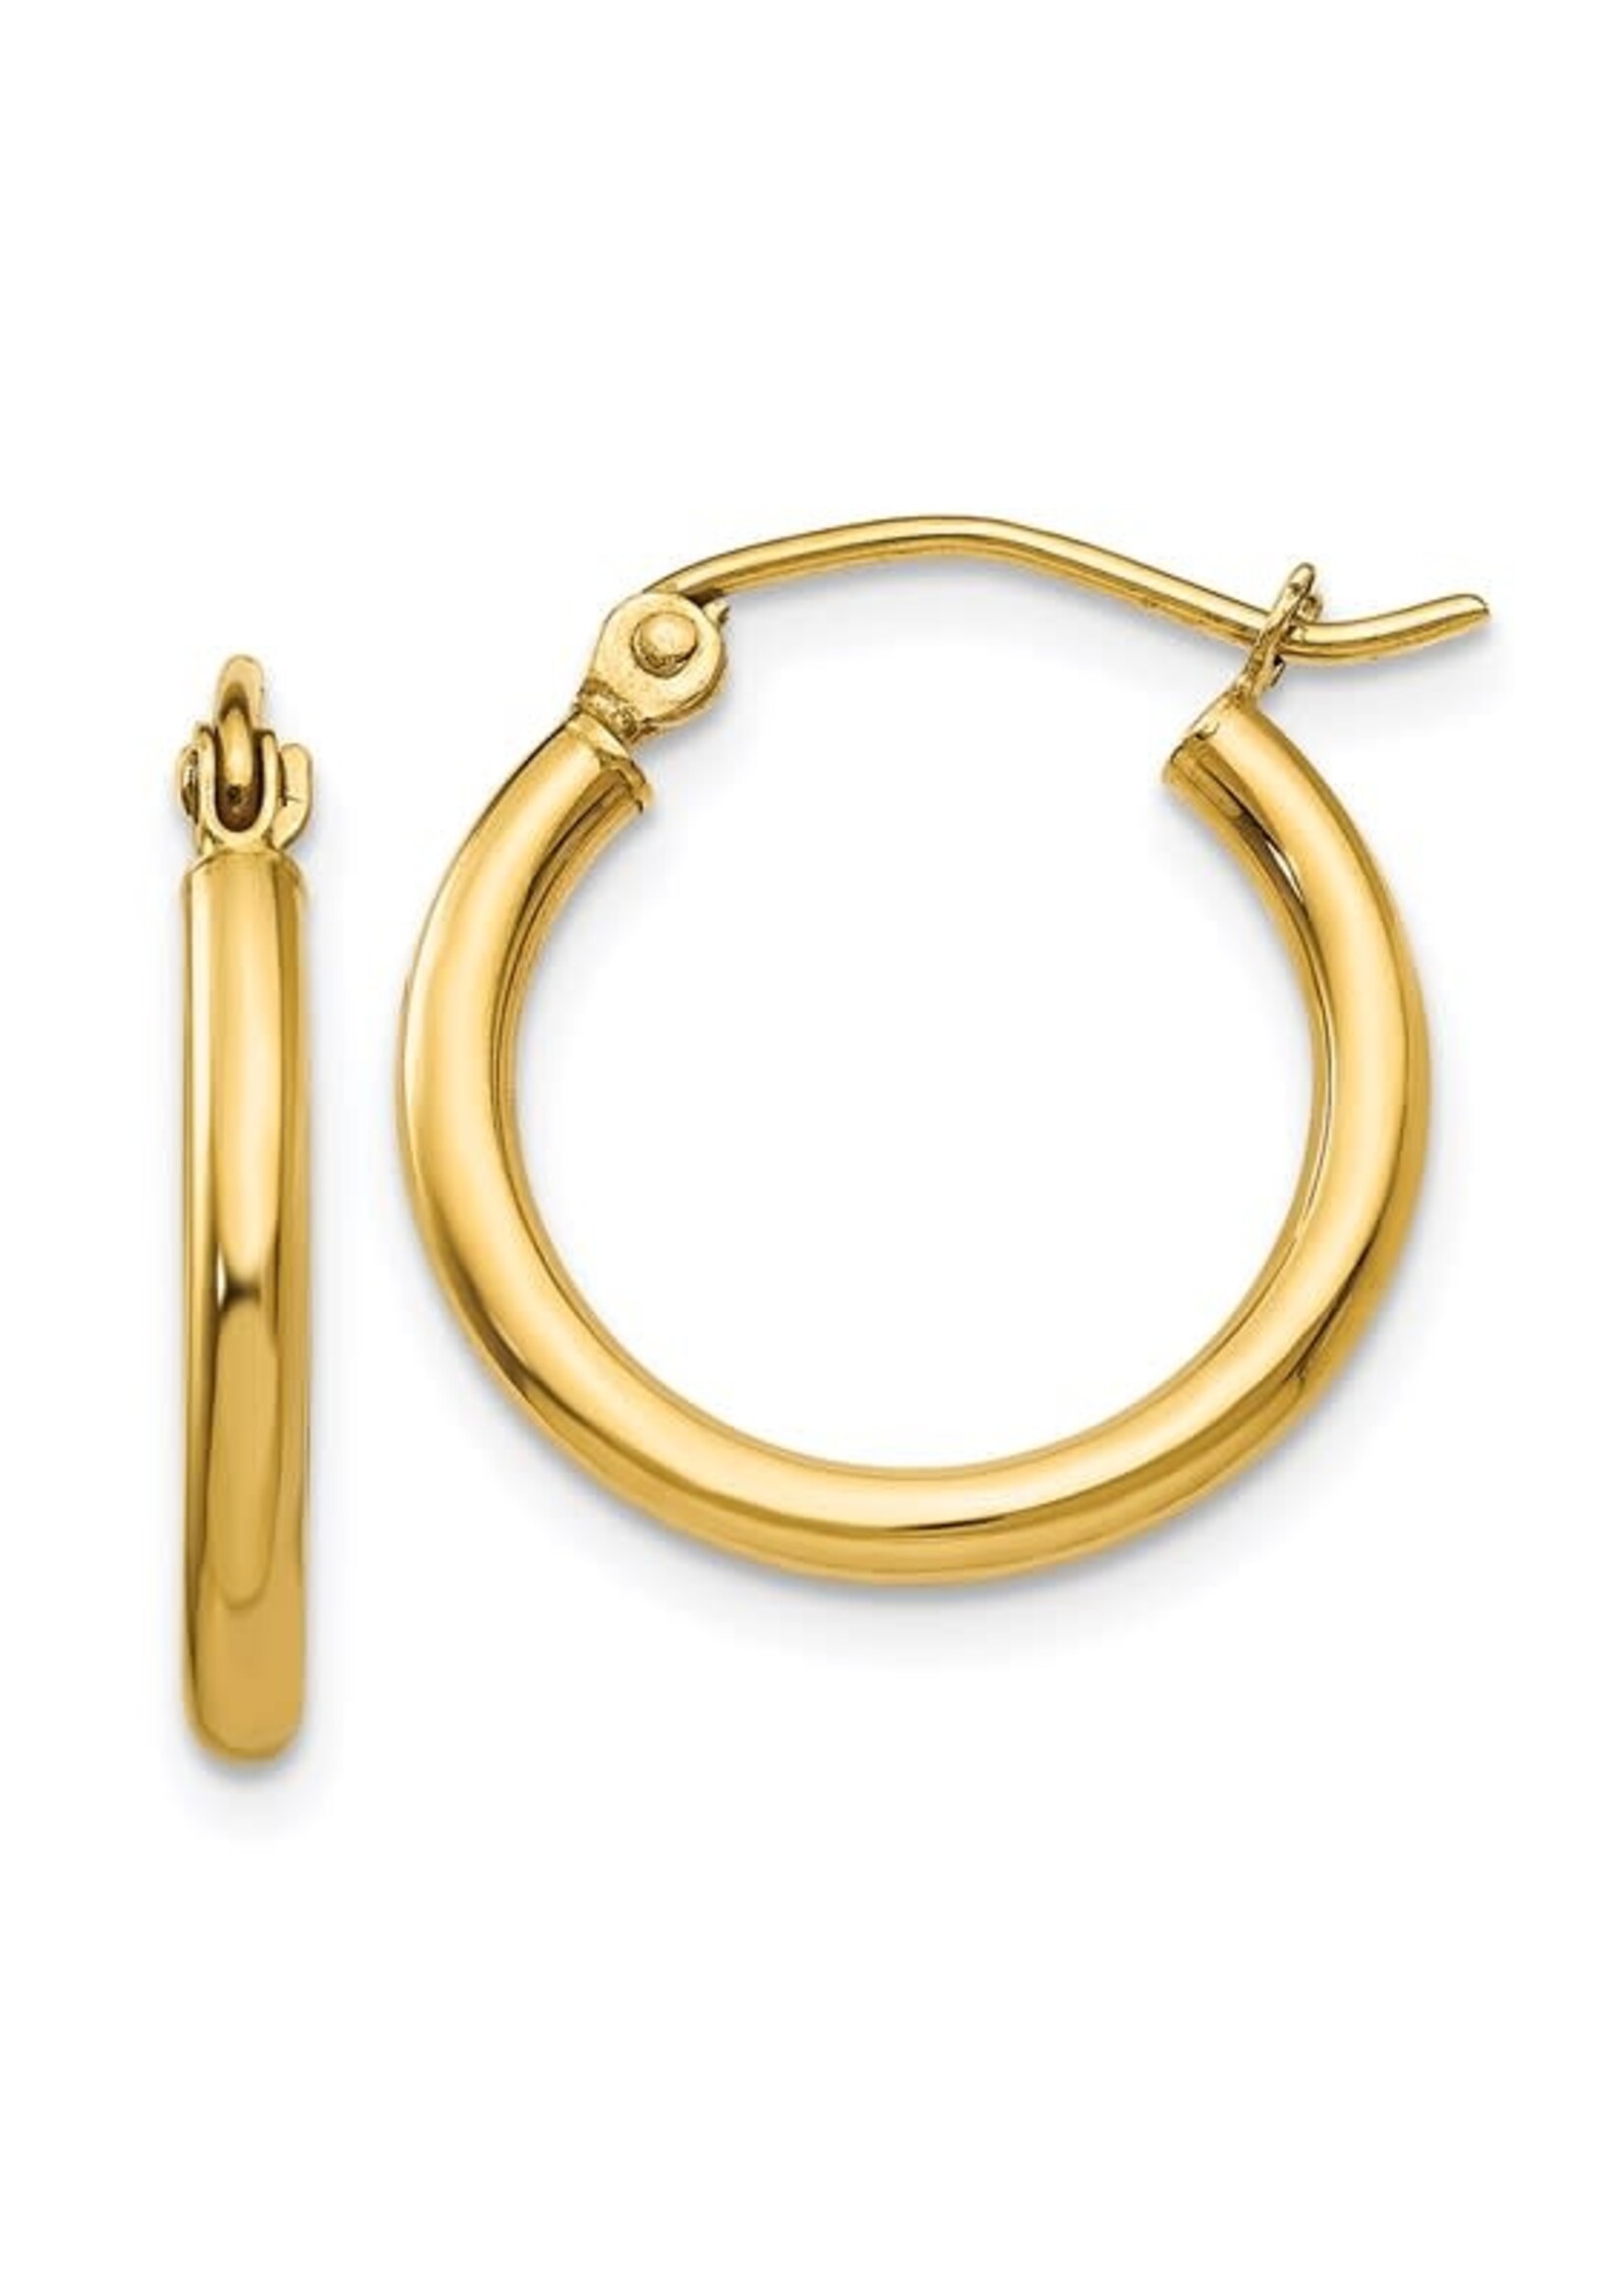 10KY .79g 15mm Gold Hoop Earrings